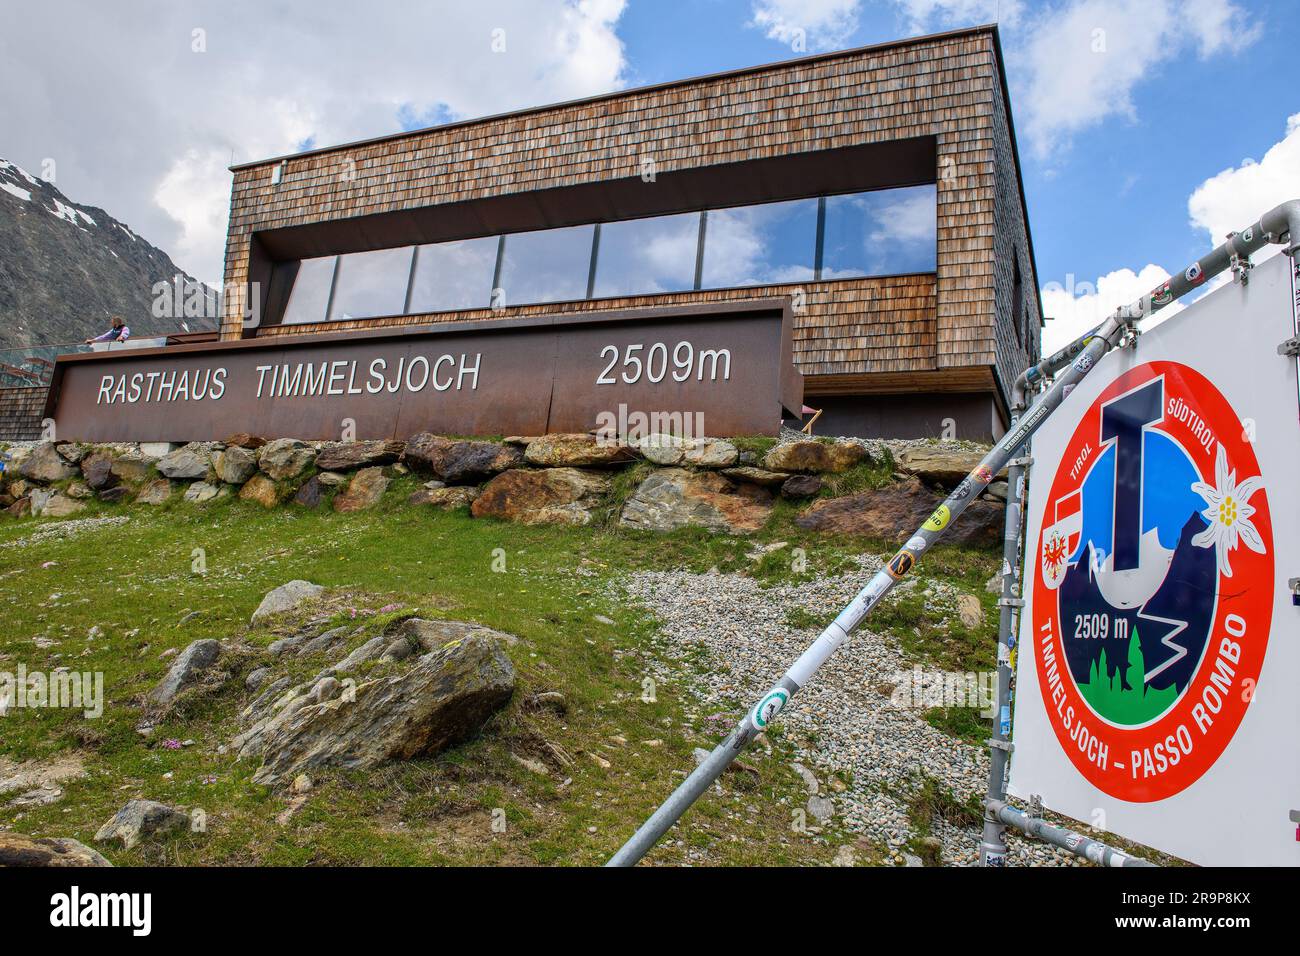 Rasthaus Timmelsjoch auf Passhöhe von 2509 Meter hohe Timmelsjoch Passo Rombo, rechts Schild mit Timmelsjoch-Logo, Tirol, Alpen, Österreich, Europa Stockfoto